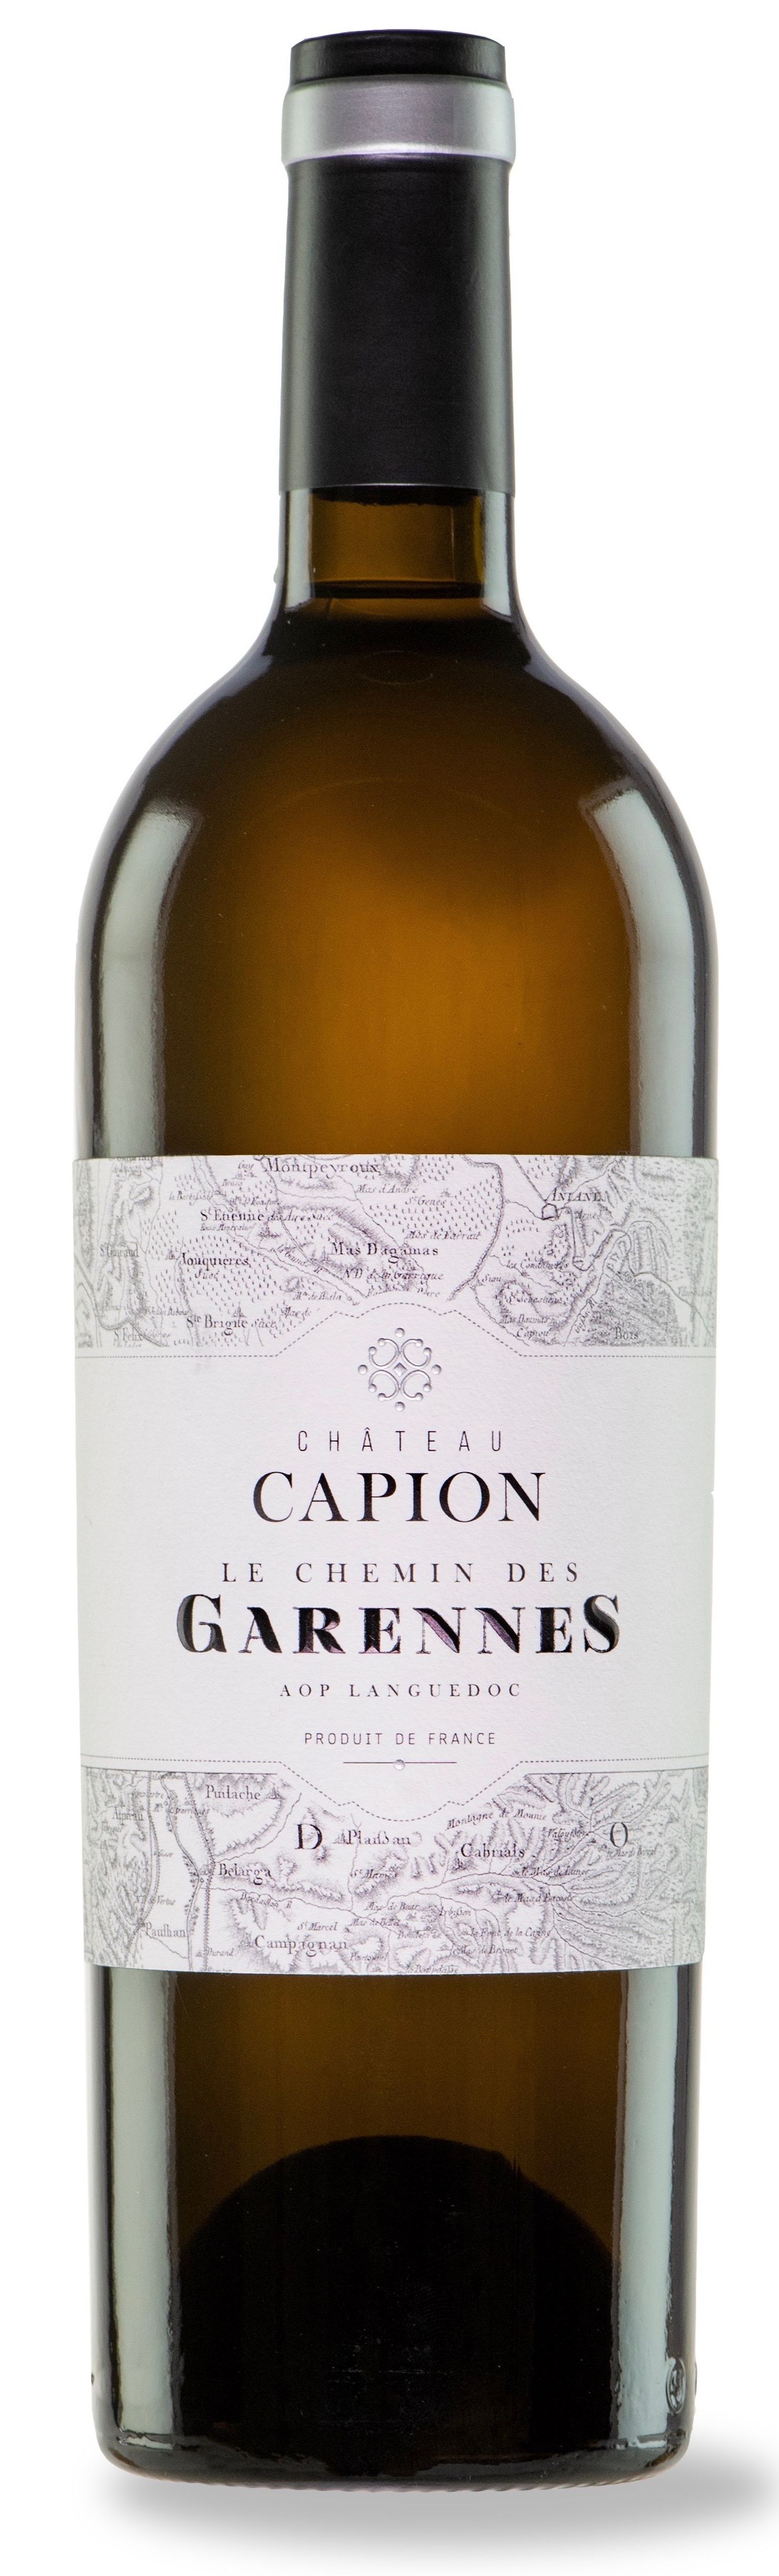 Château Capion Le Chemin des Garennes, Weiß, 2016, Languedoc. Bottle image